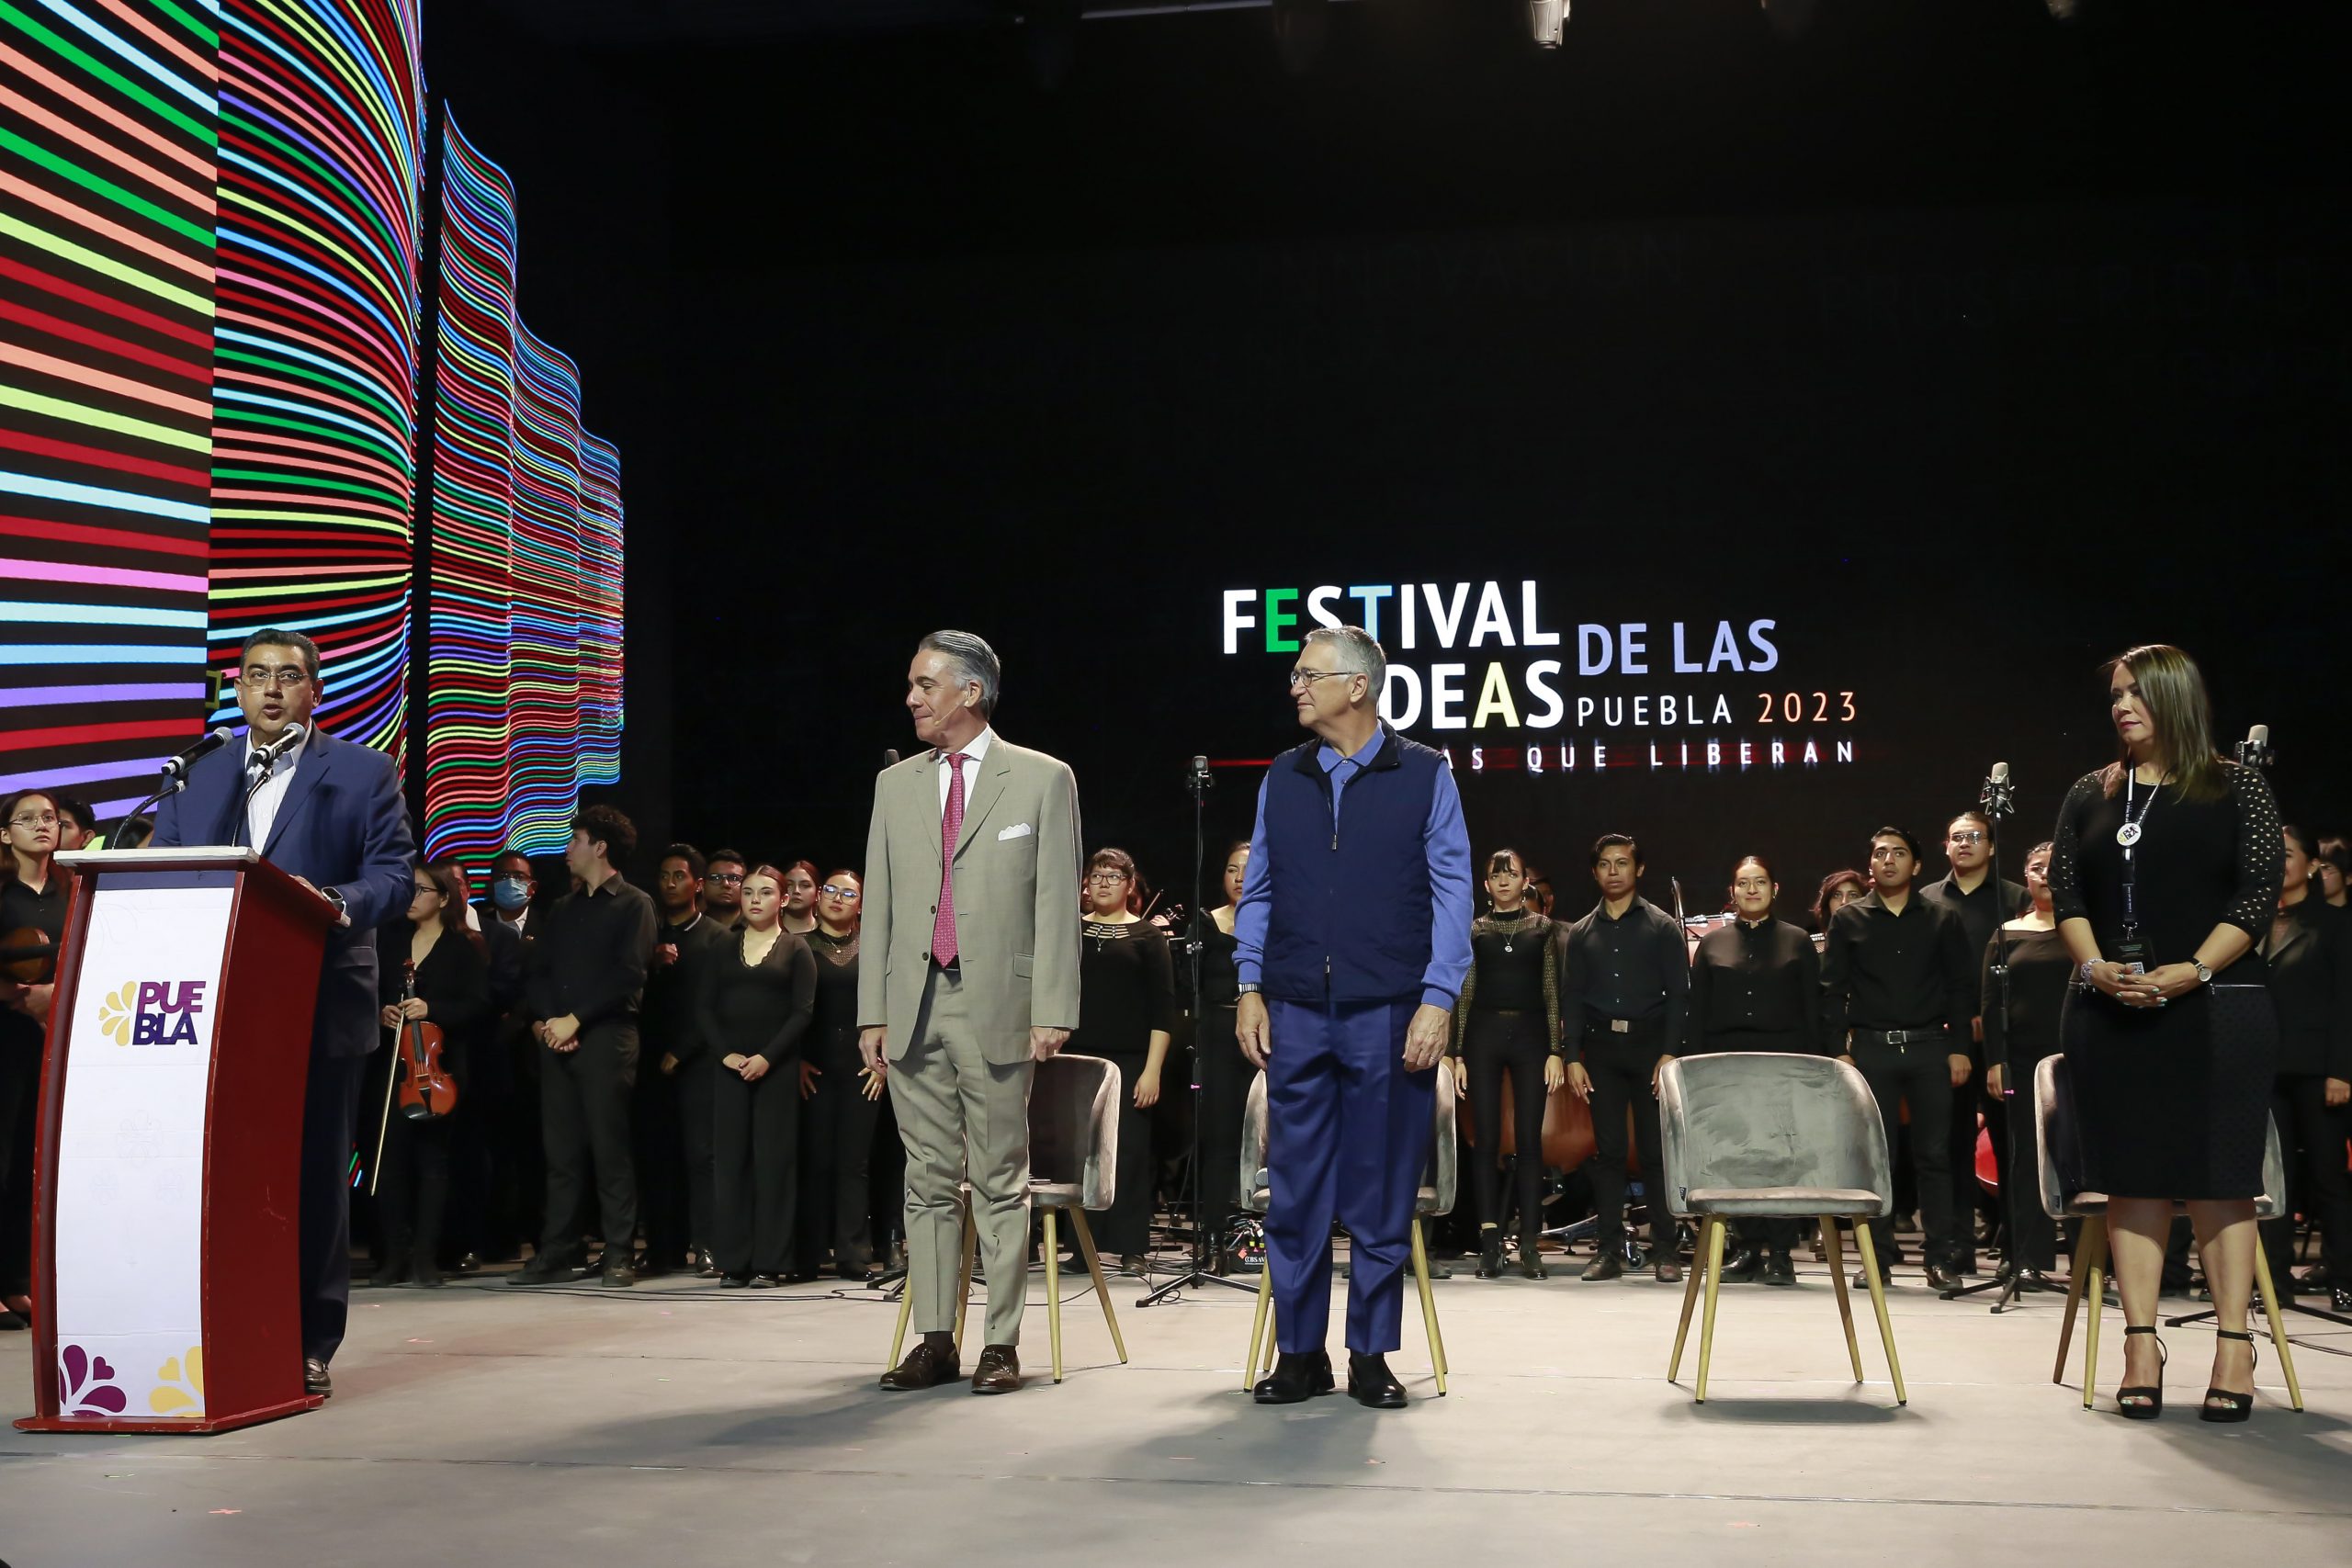 Festival de las Ideas contribuye a una mejor sociedad: Gobernador de Puebla